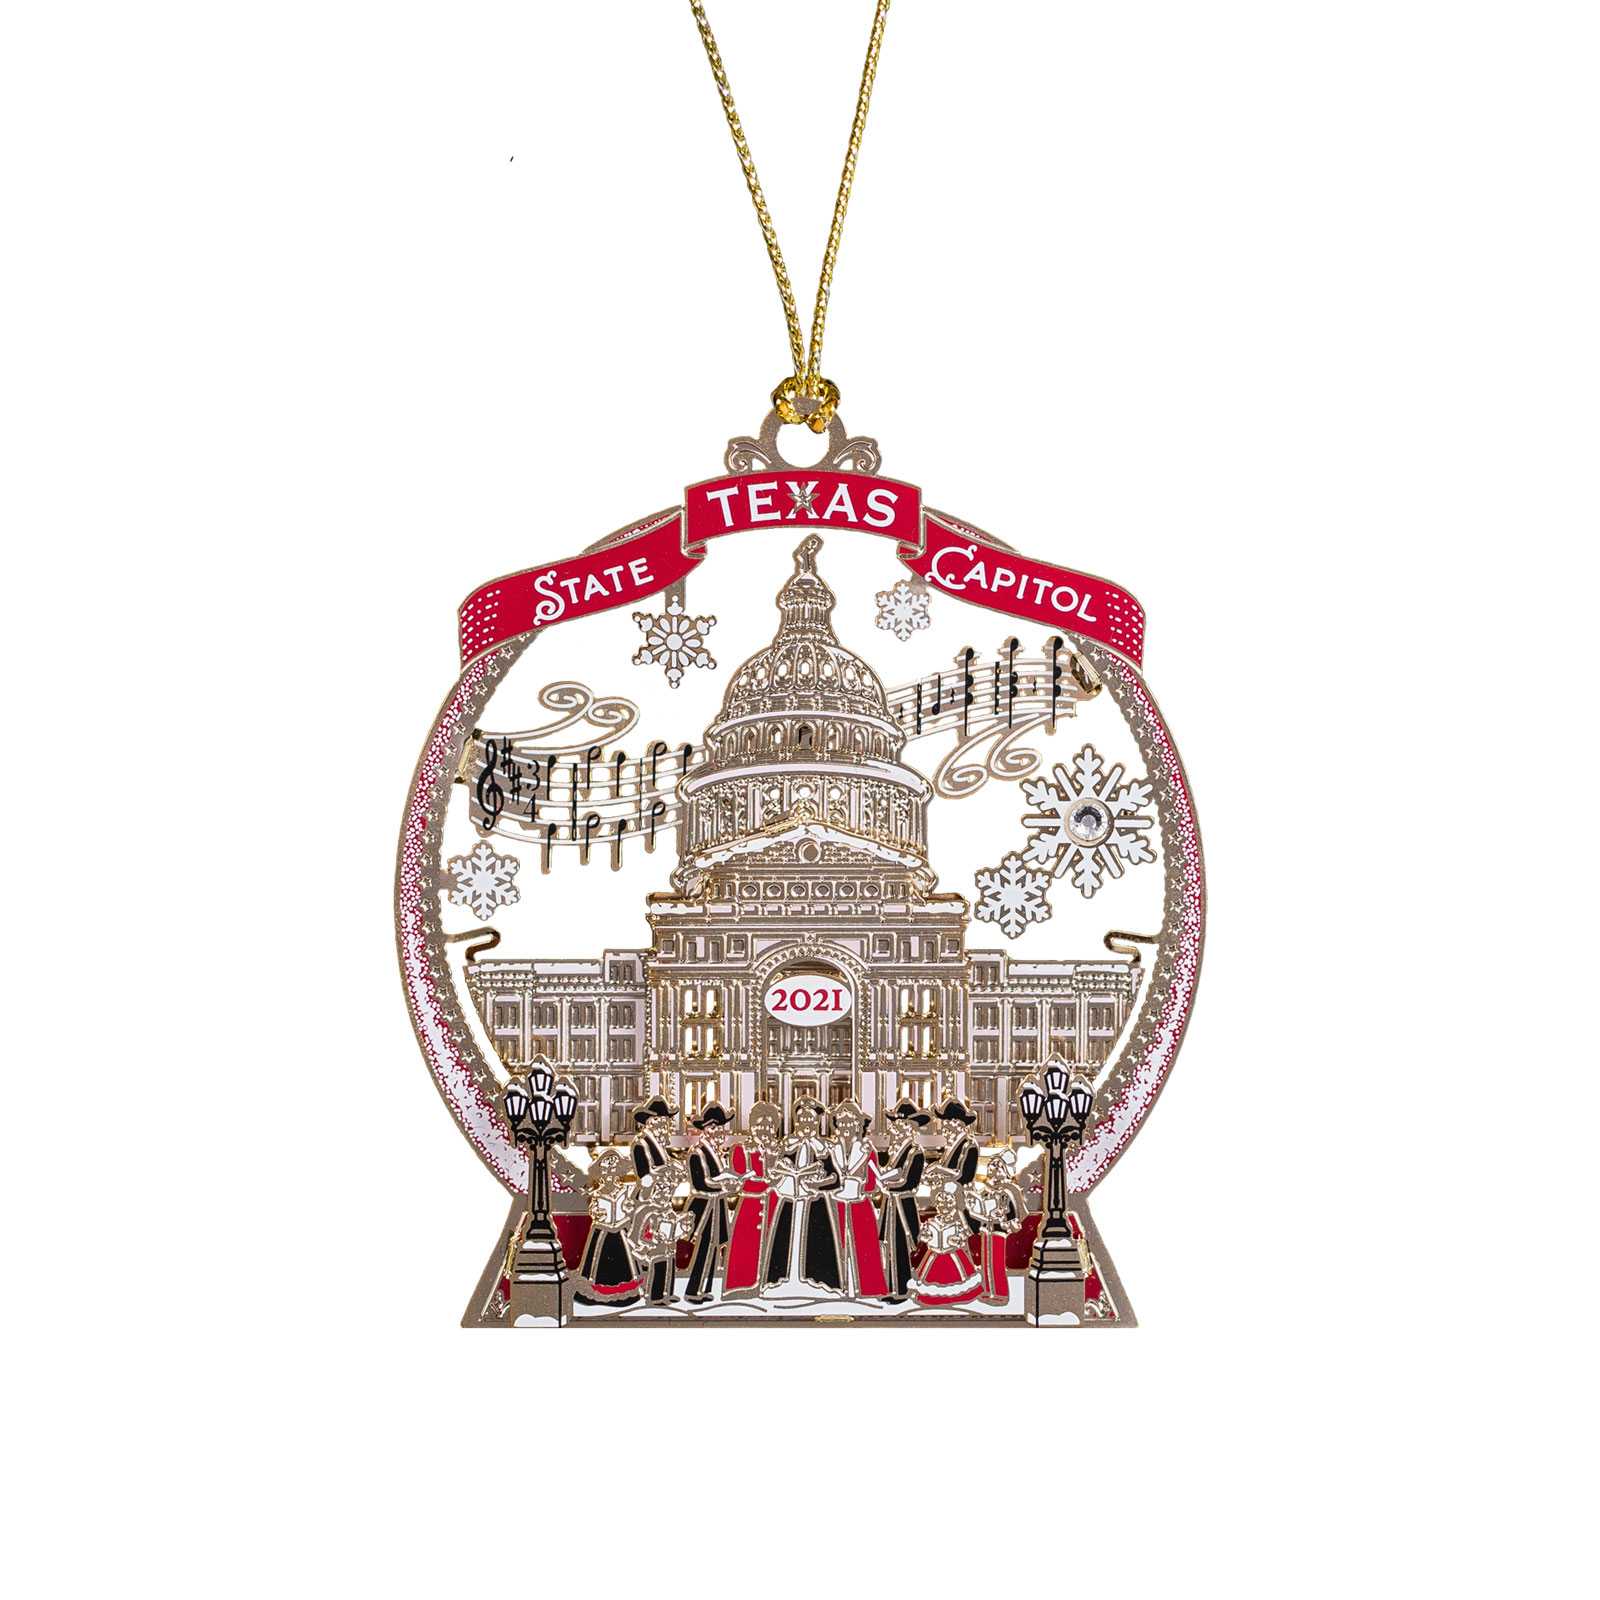 2021 Texas Capitol Ornament